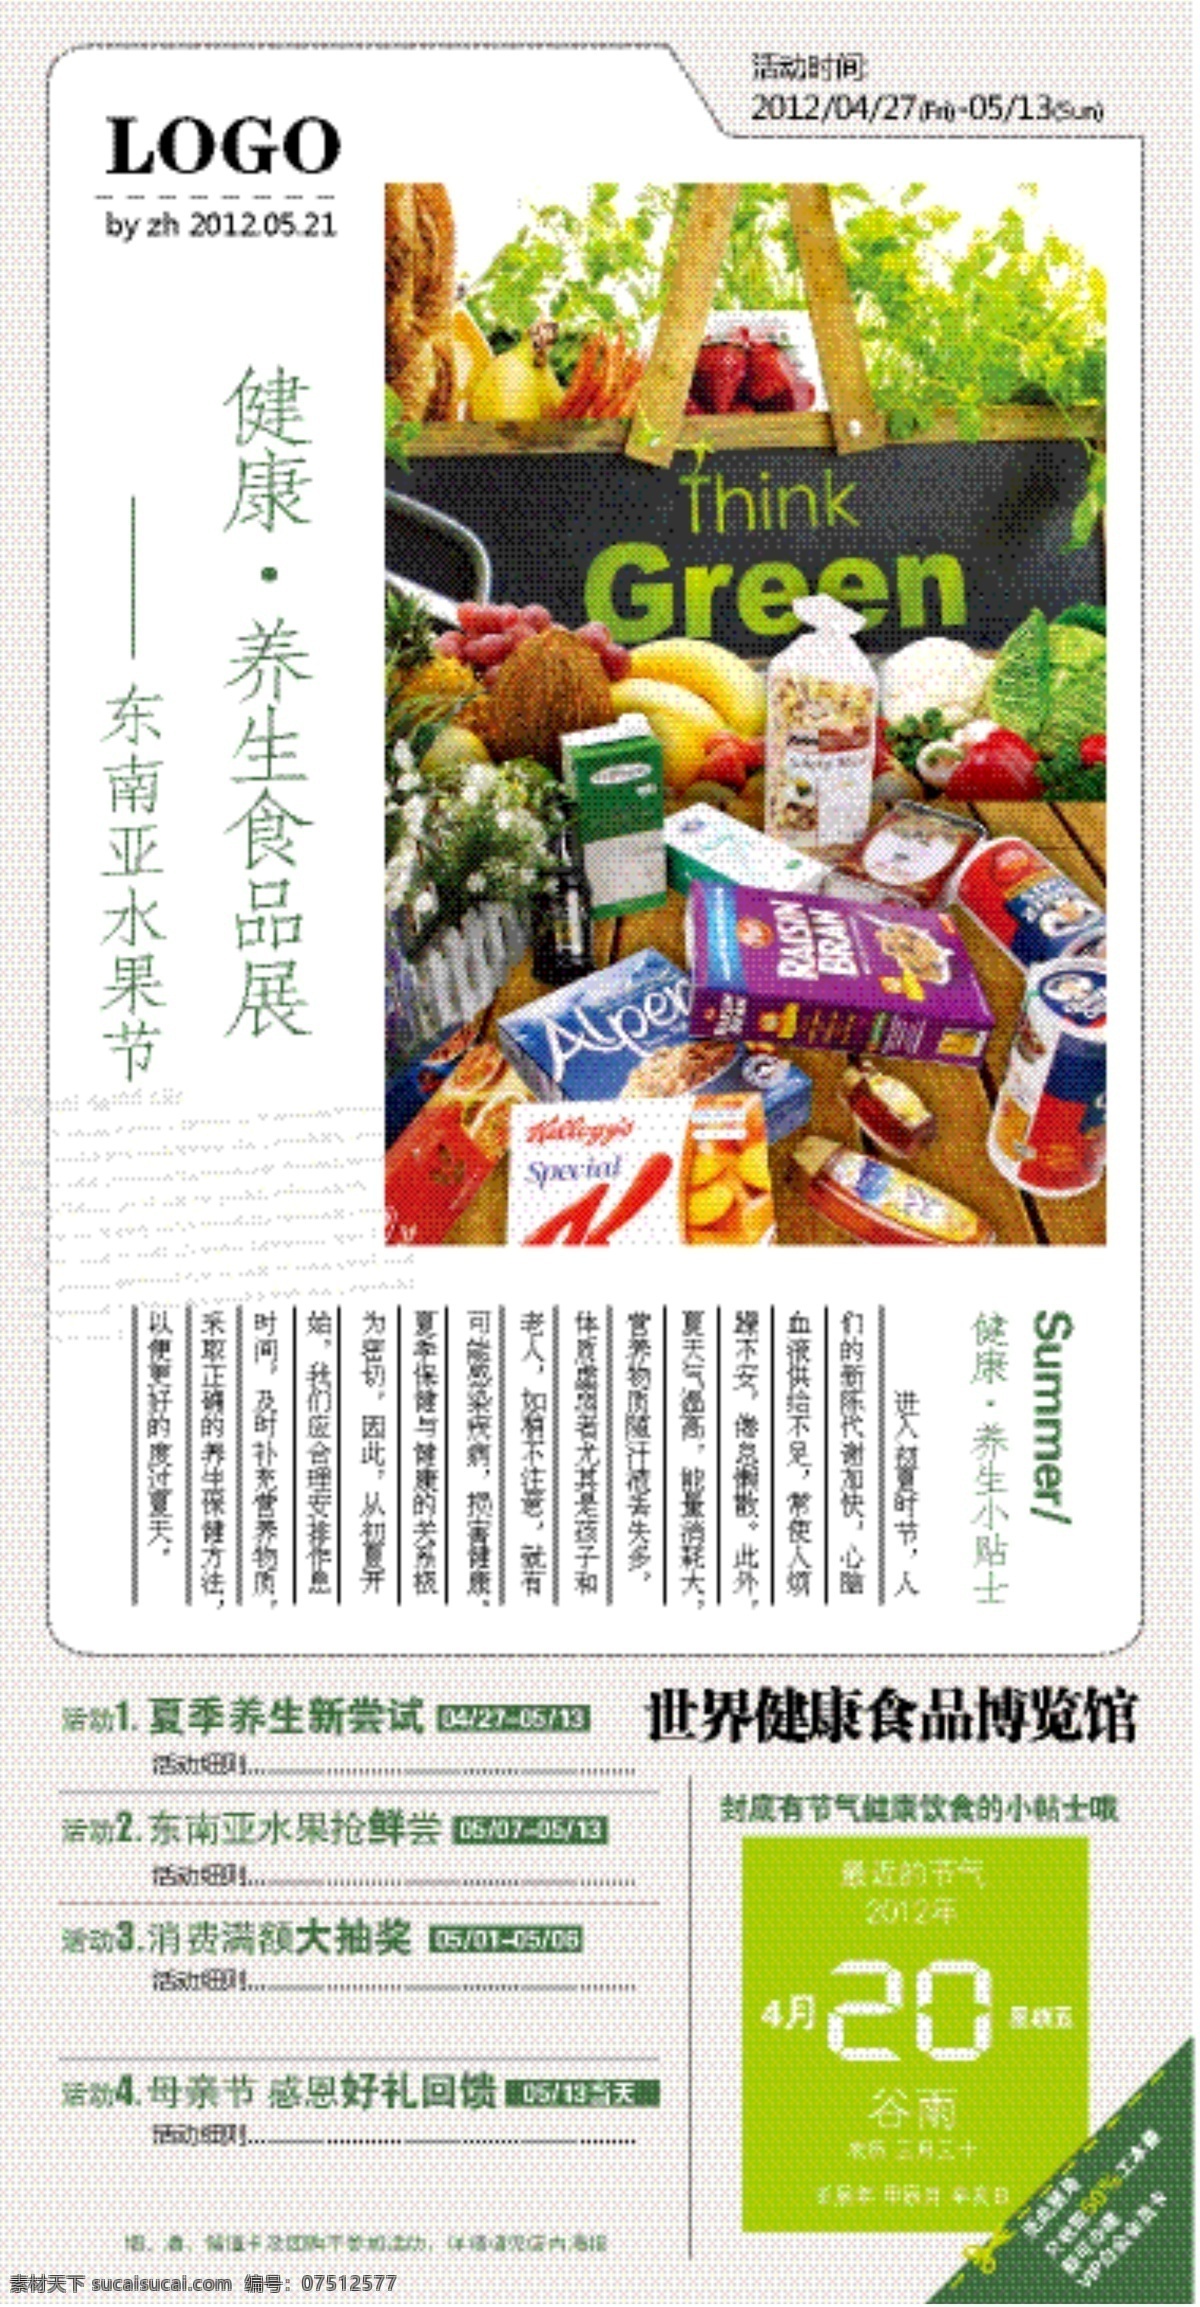 初夏 养生 食品展 dm宣传单 健康 绿色 矢量 psd源文件 餐饮素材